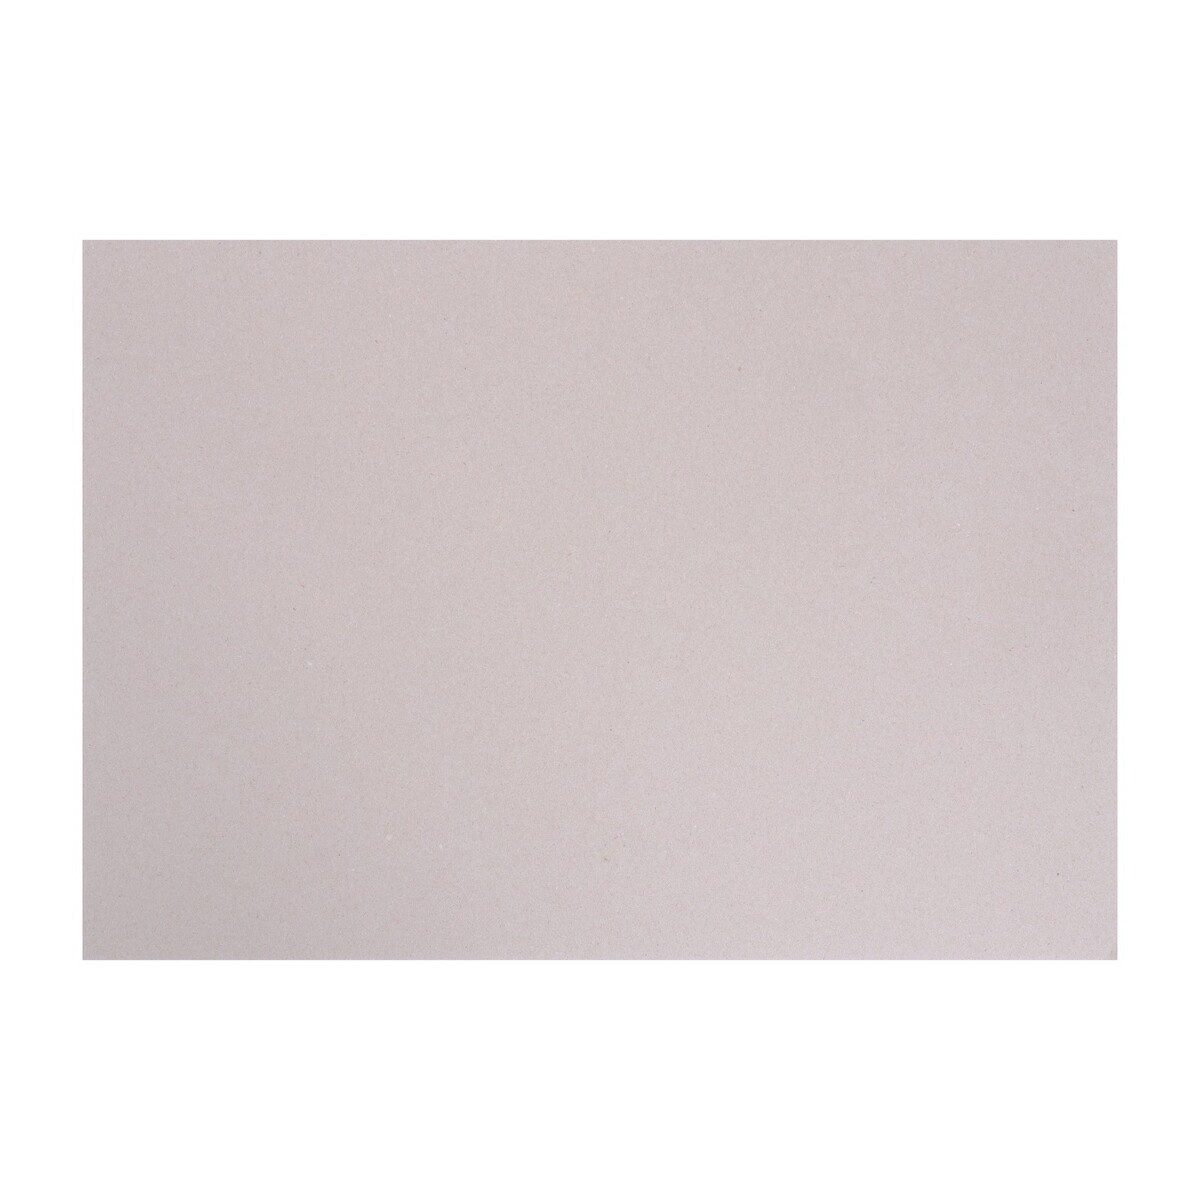 Картон переплетный а4 (210 х 297 мм), набор 10 листов, 2.0 мм, 1250 г/м2, серый, в пакете, calligrata фото